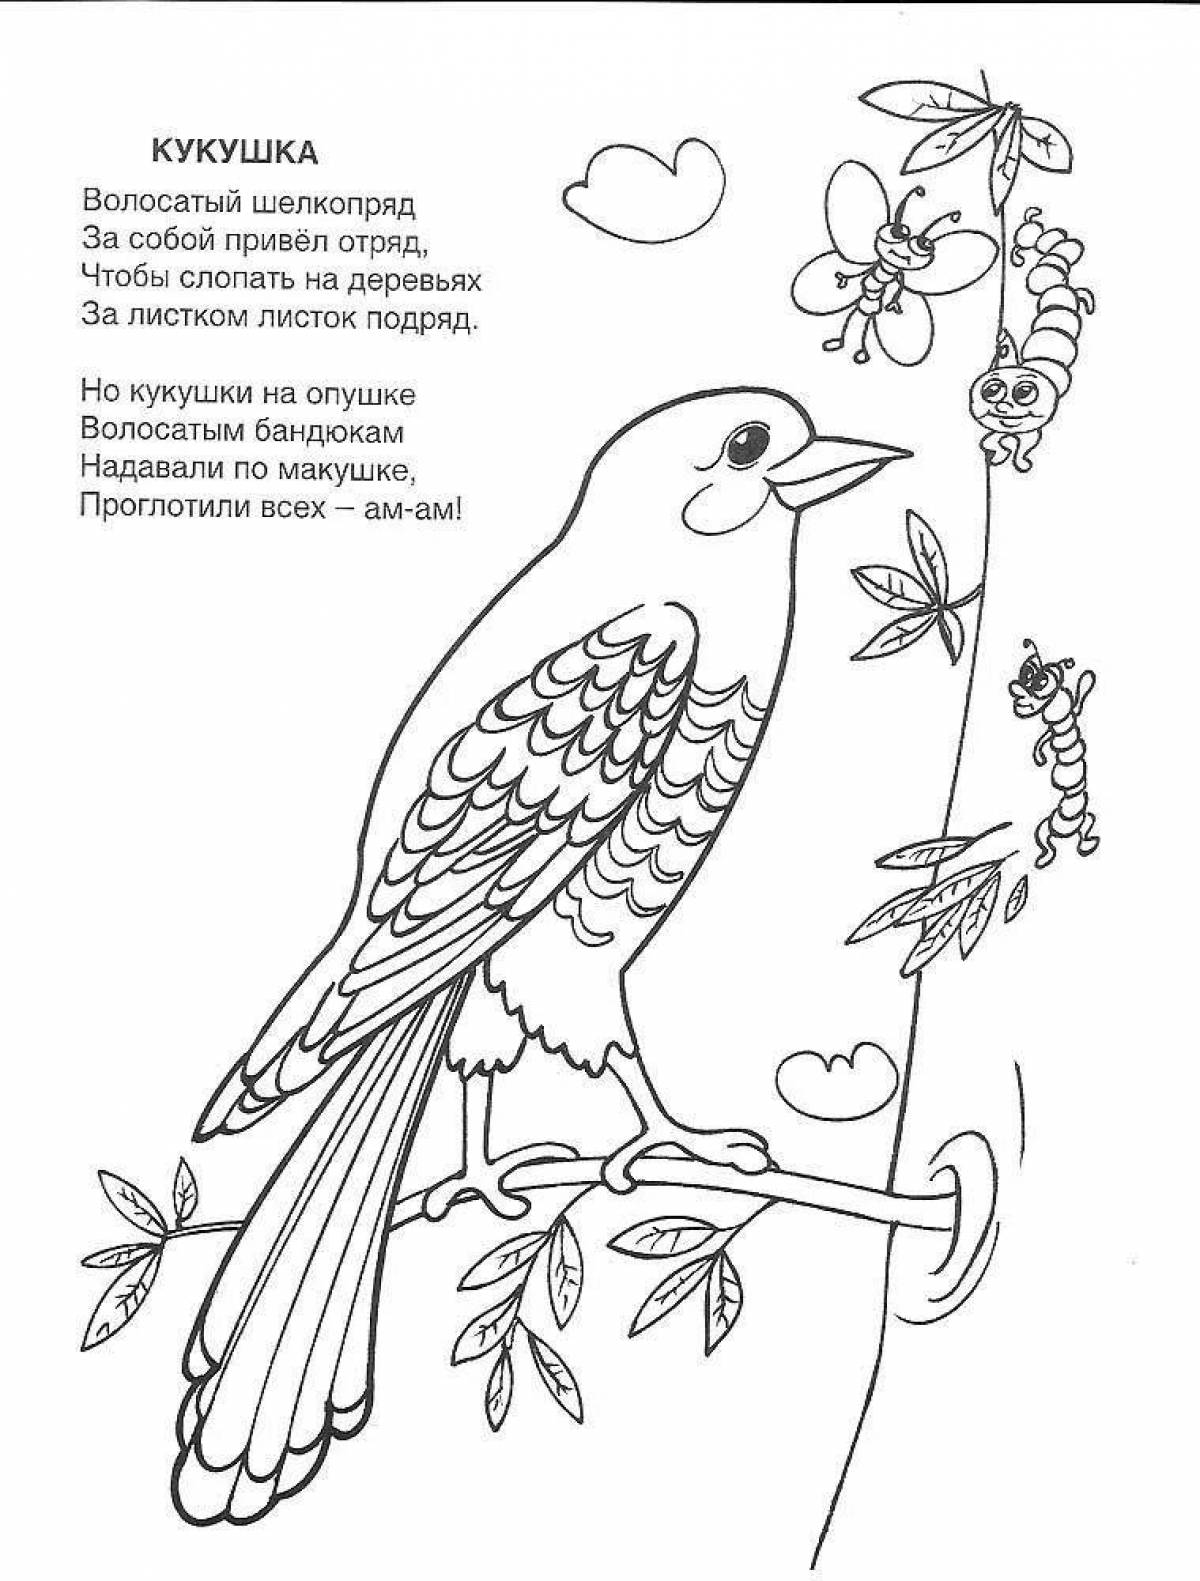 Cuckoo fun coloring book for kids